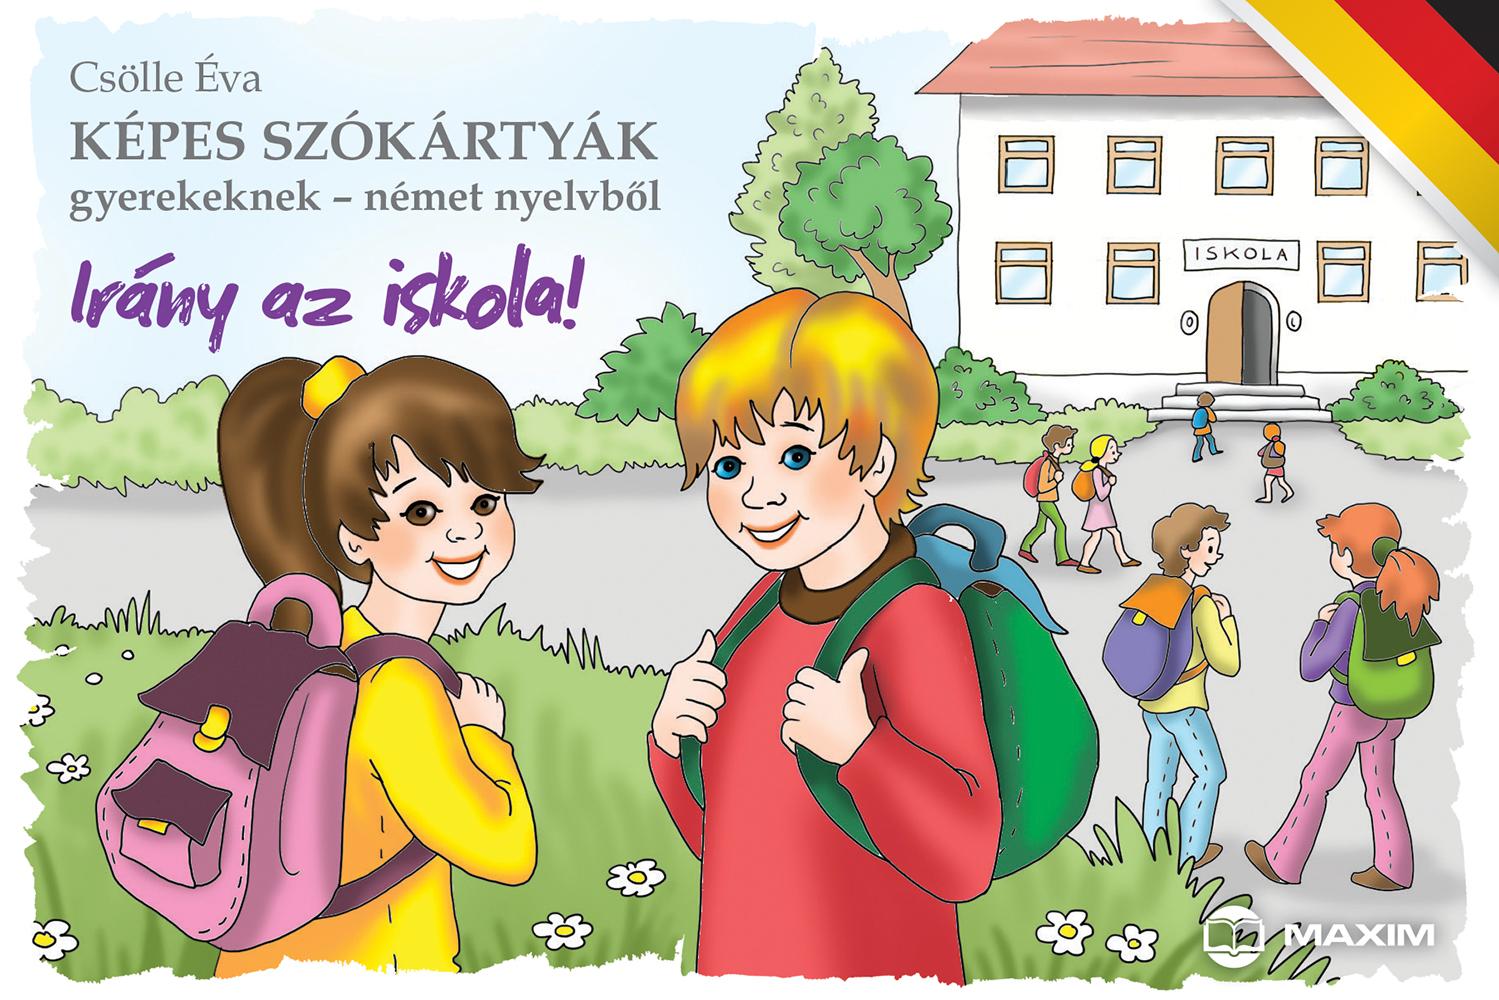 Csölle Éva - Képes szókártyák gyerekeknek - német nyelvből - Irány az iskola!